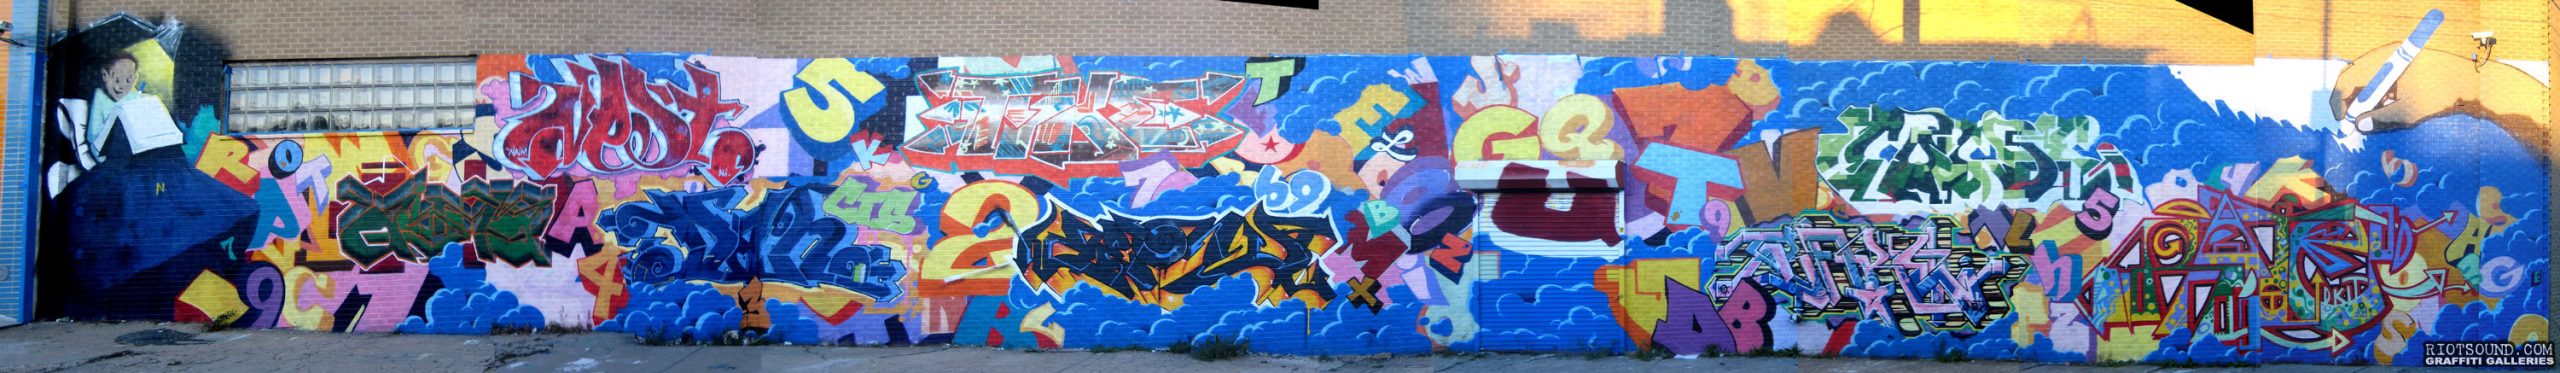 Bronx Graffiti Production